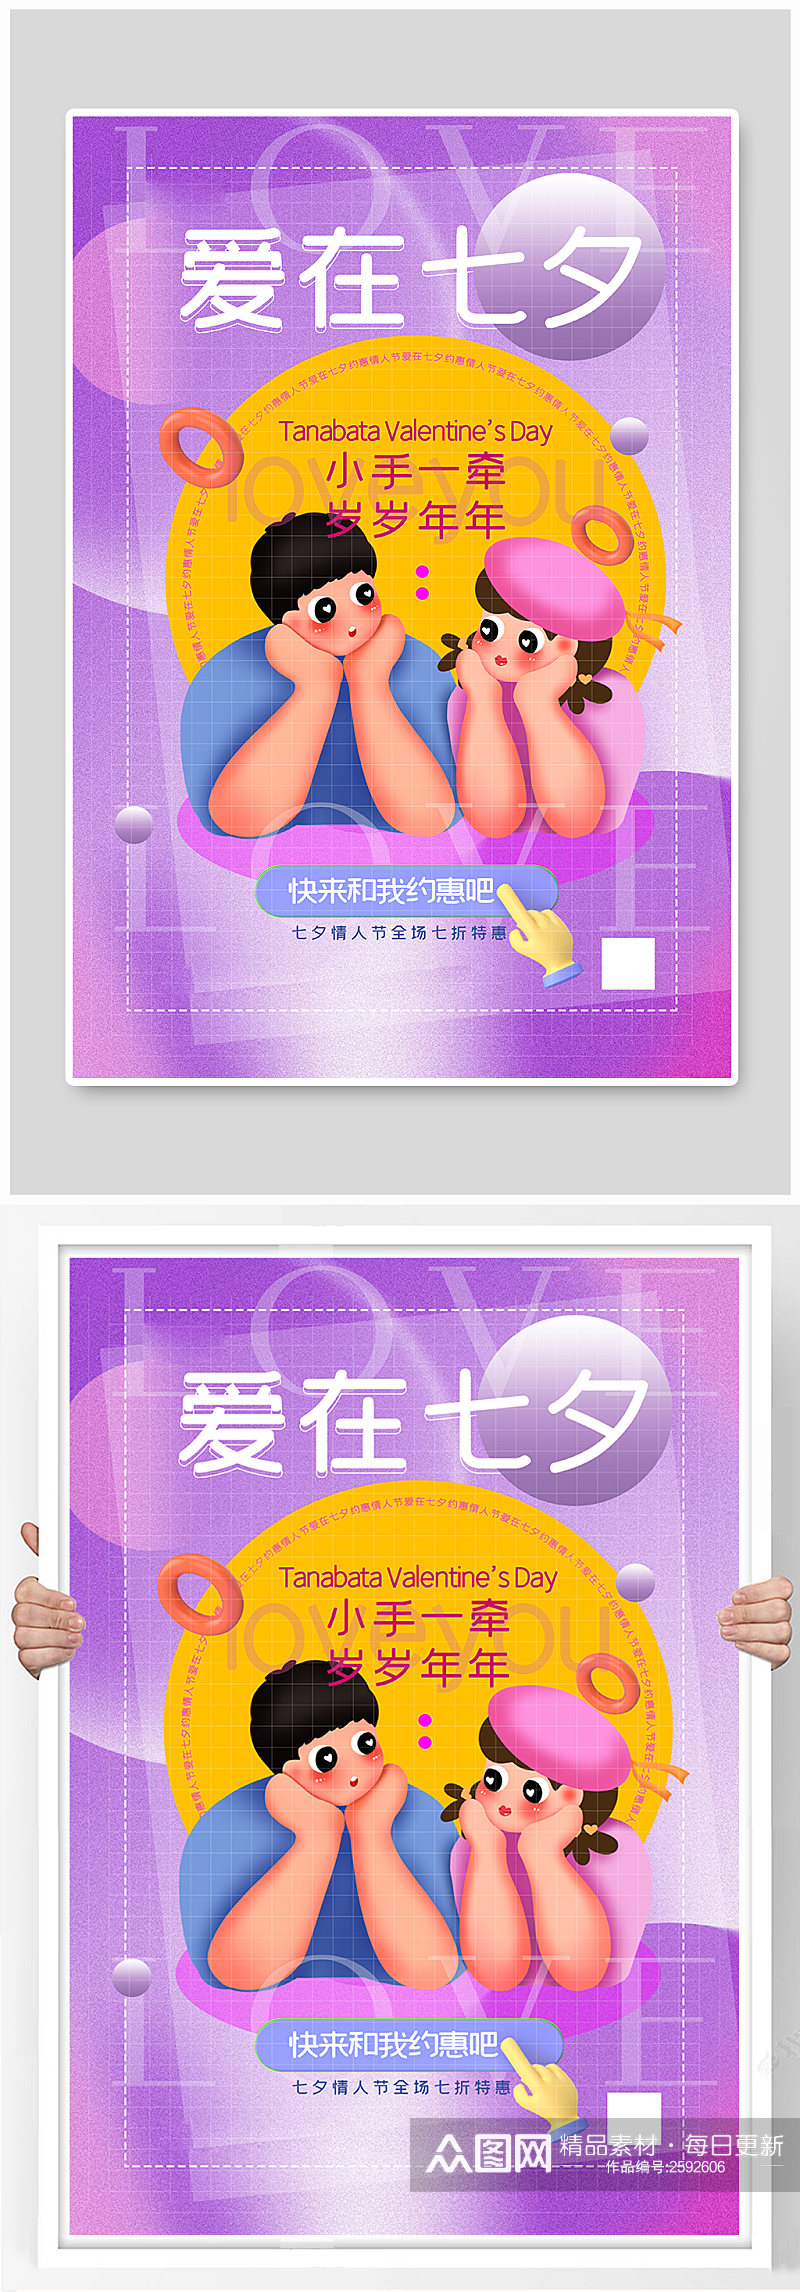 紫色3d微粒体七夕主题促销海报素材